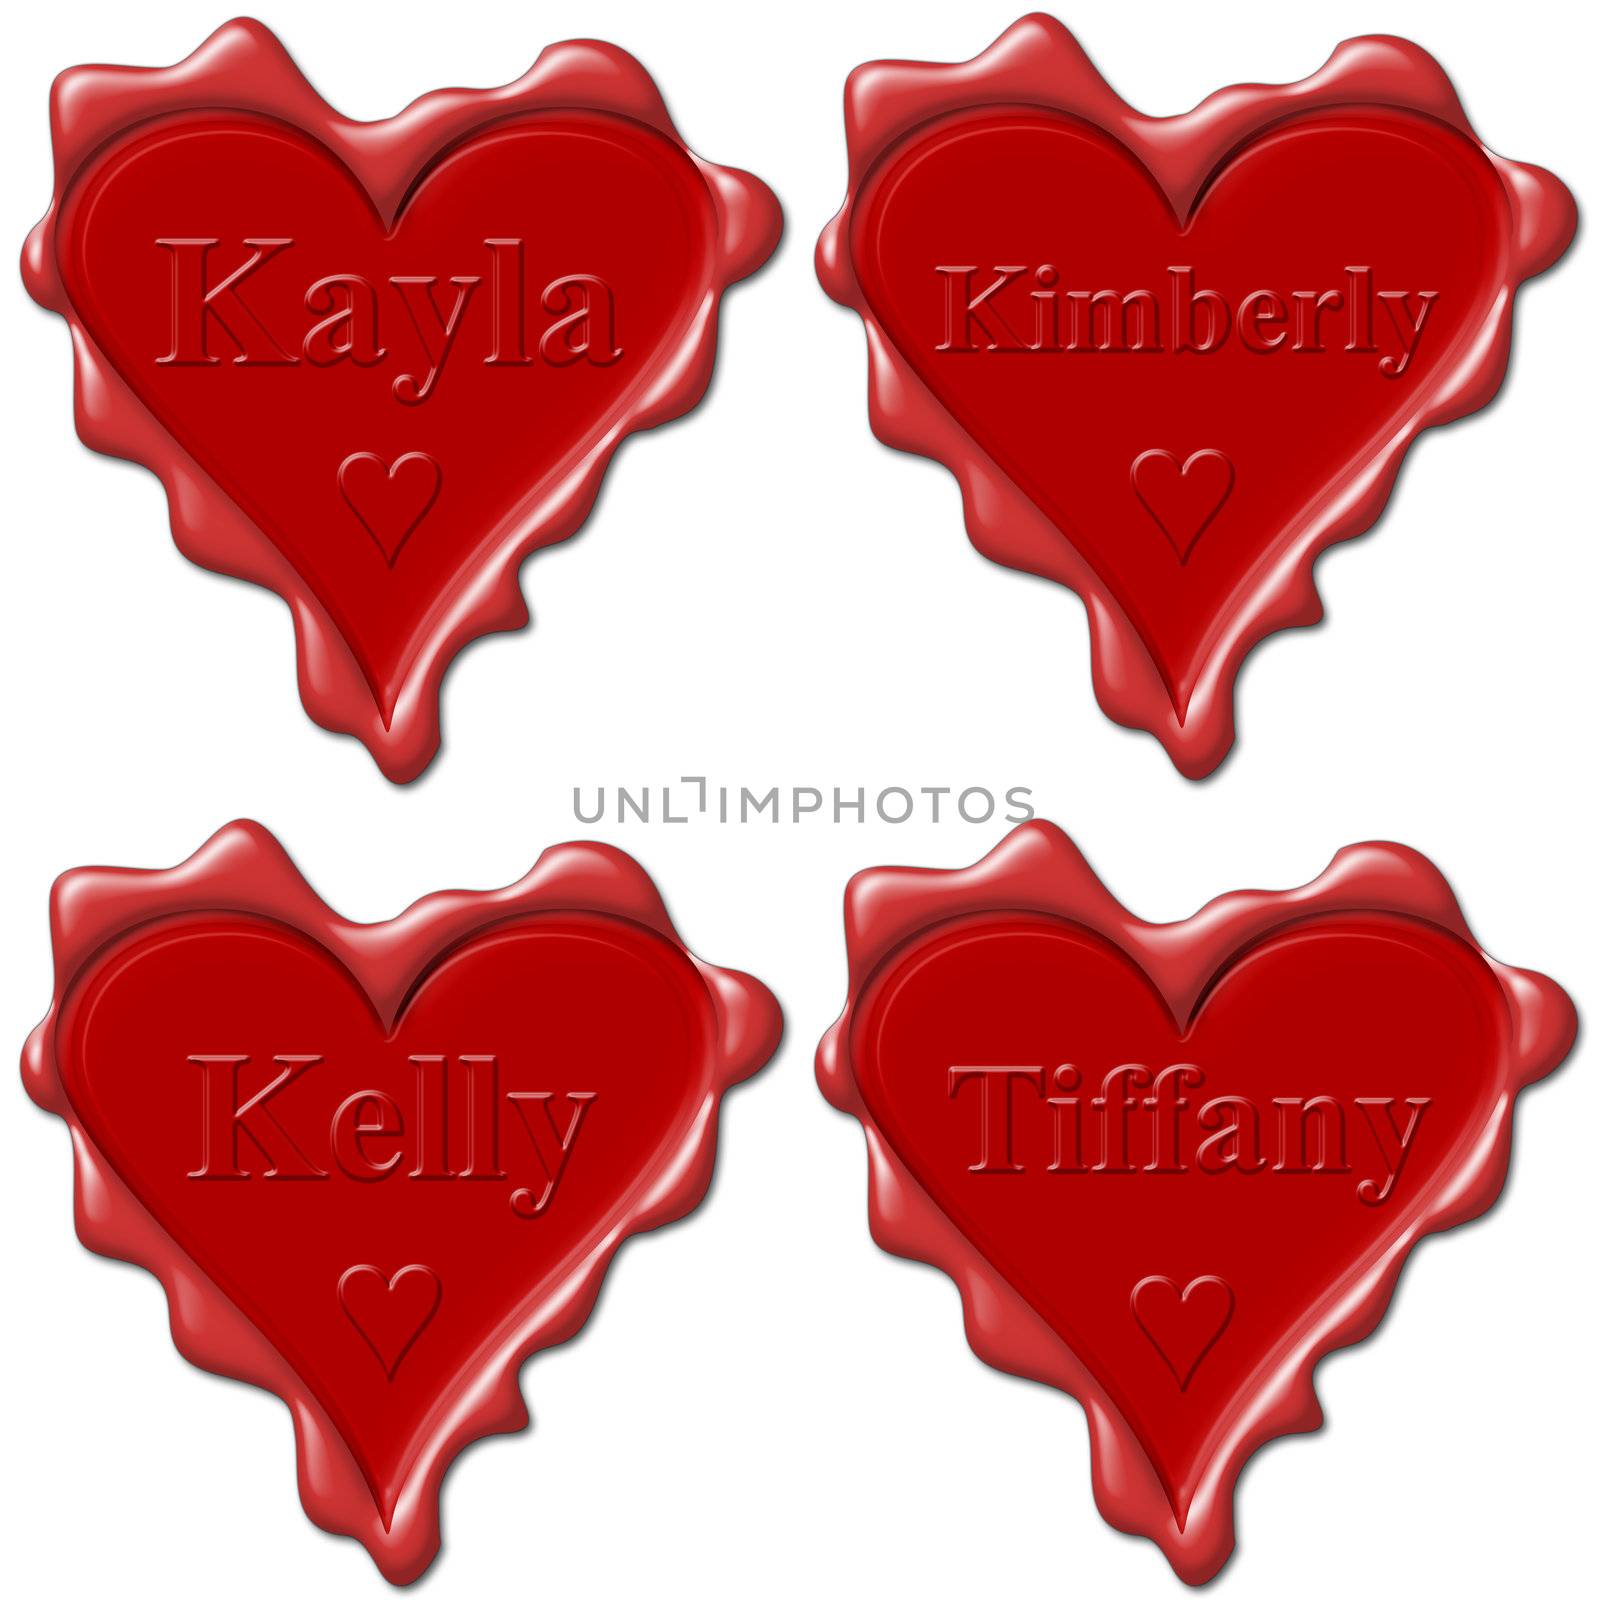 Valentine love hearts with names: Kayla, Kimberly, Kelly, Tiffany